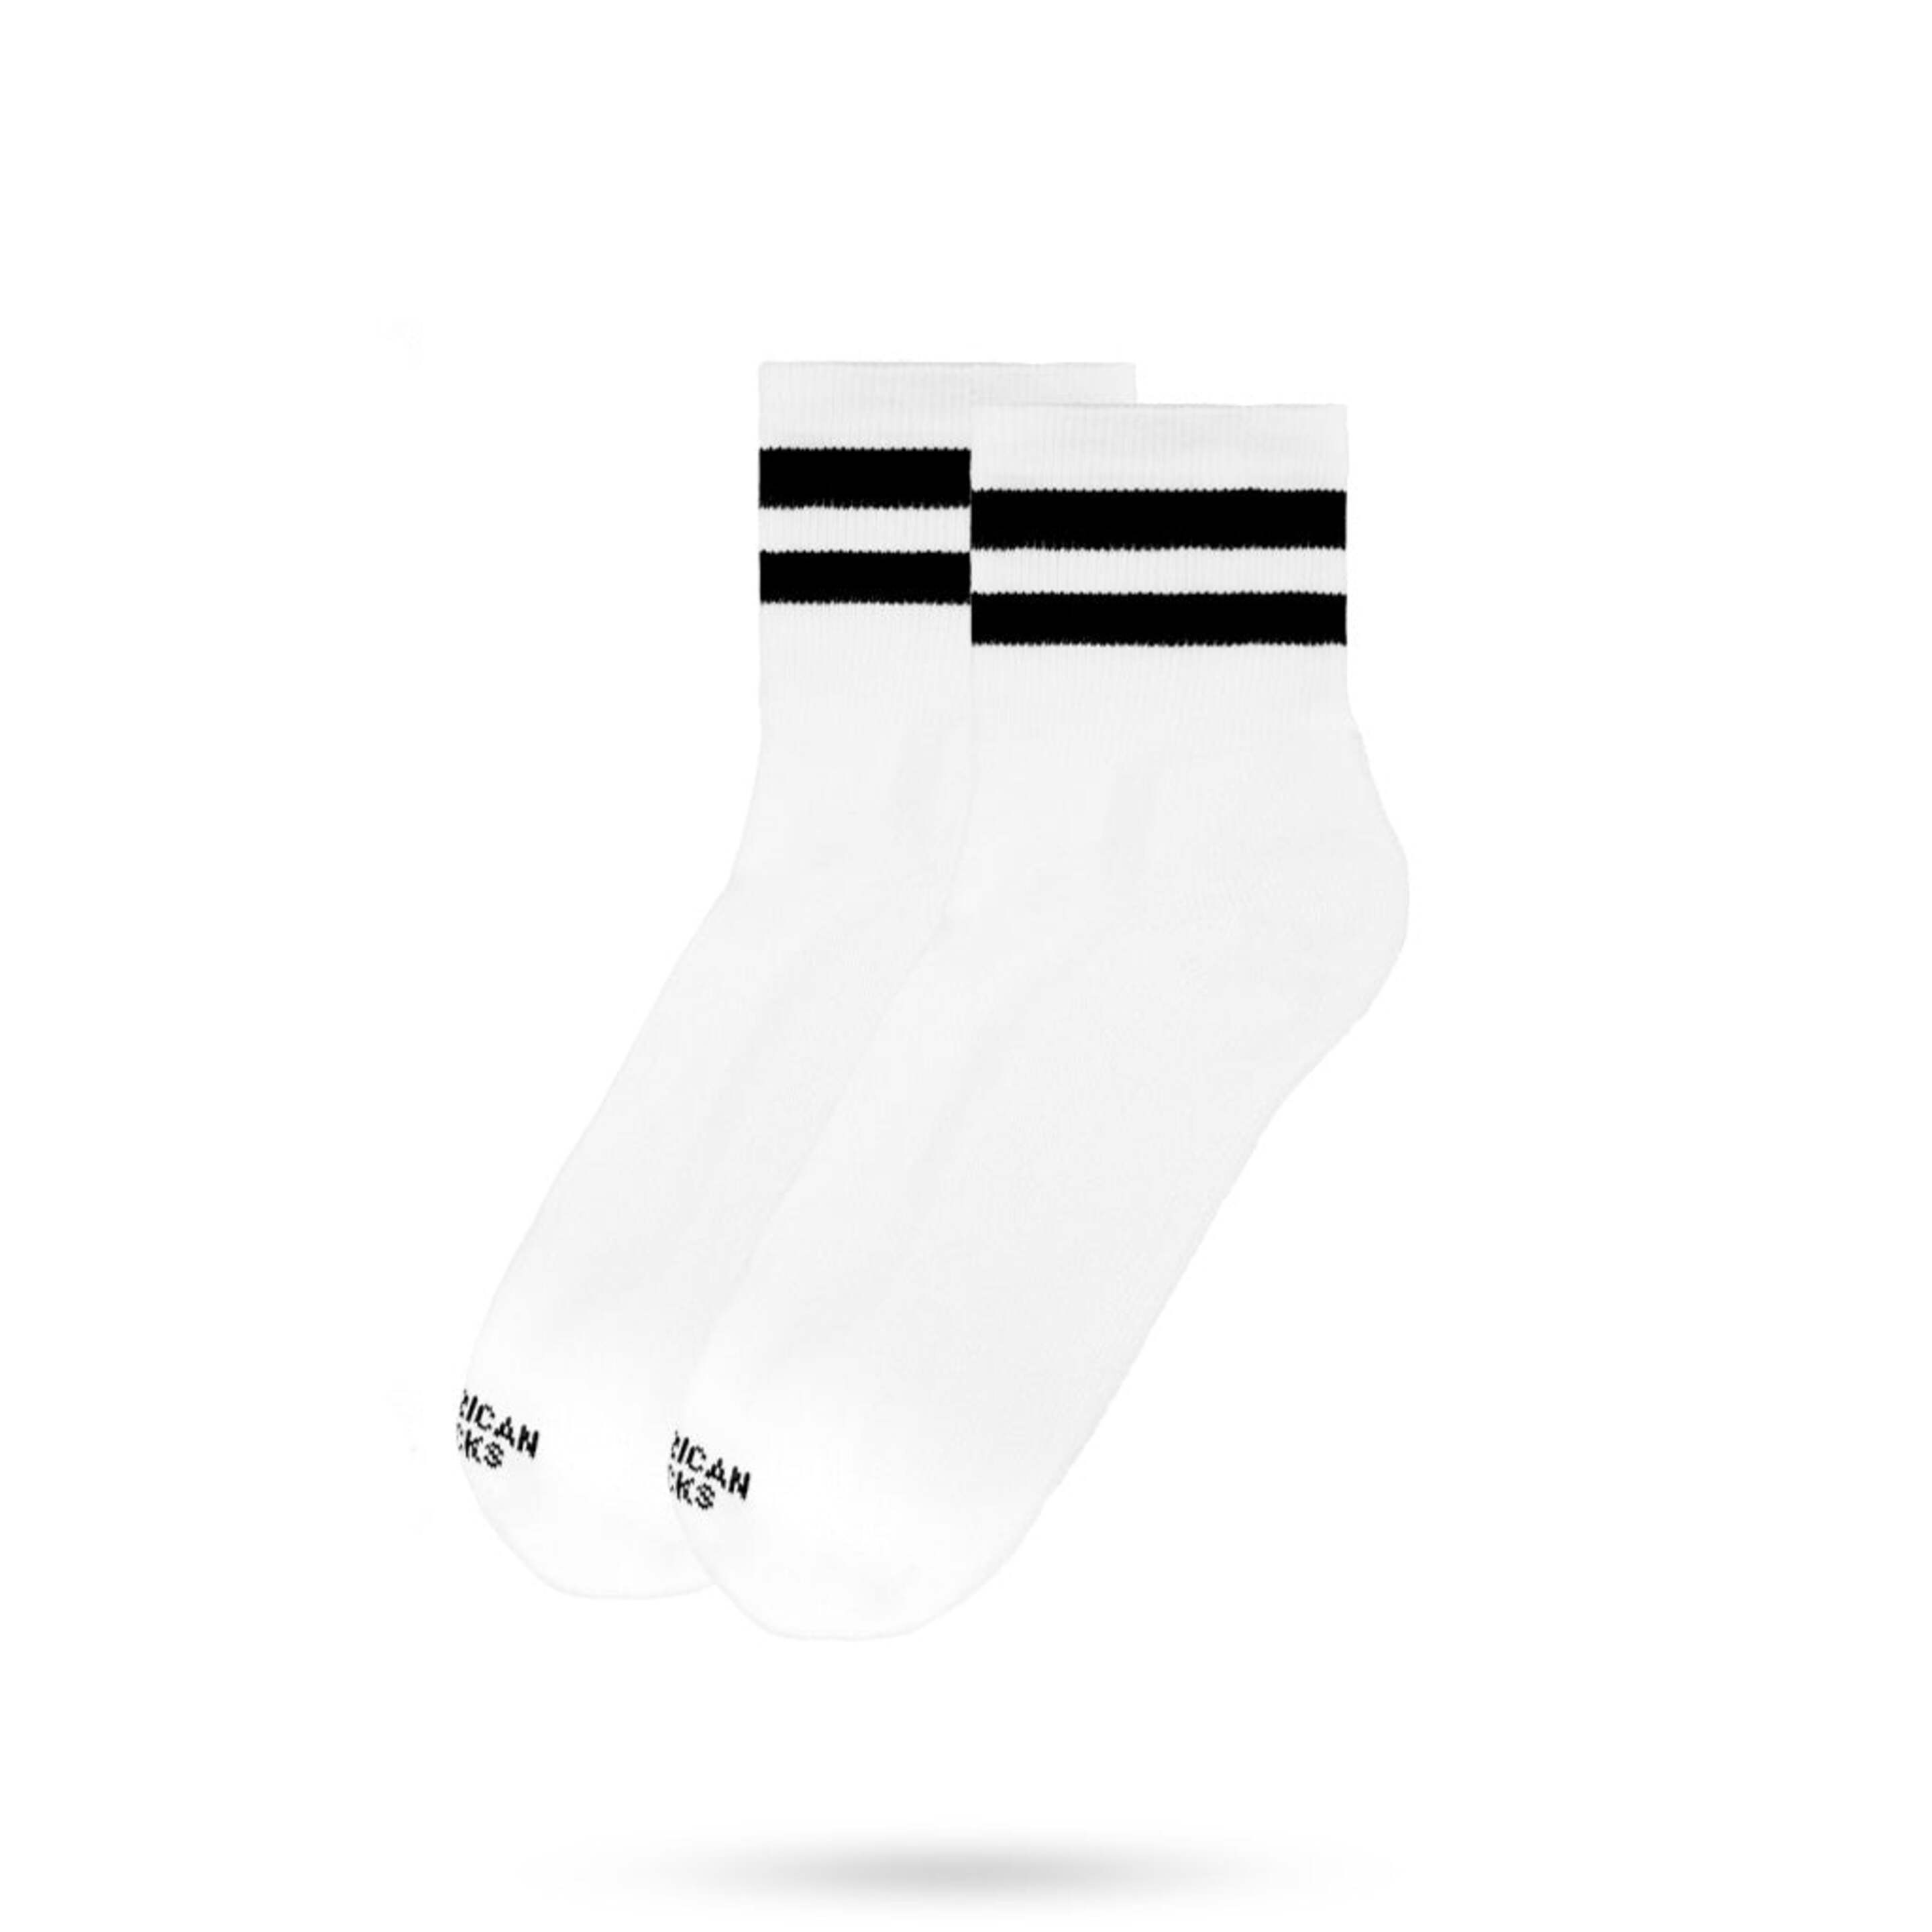 Meias American Socks - Old School - Ankle High - blanco - 